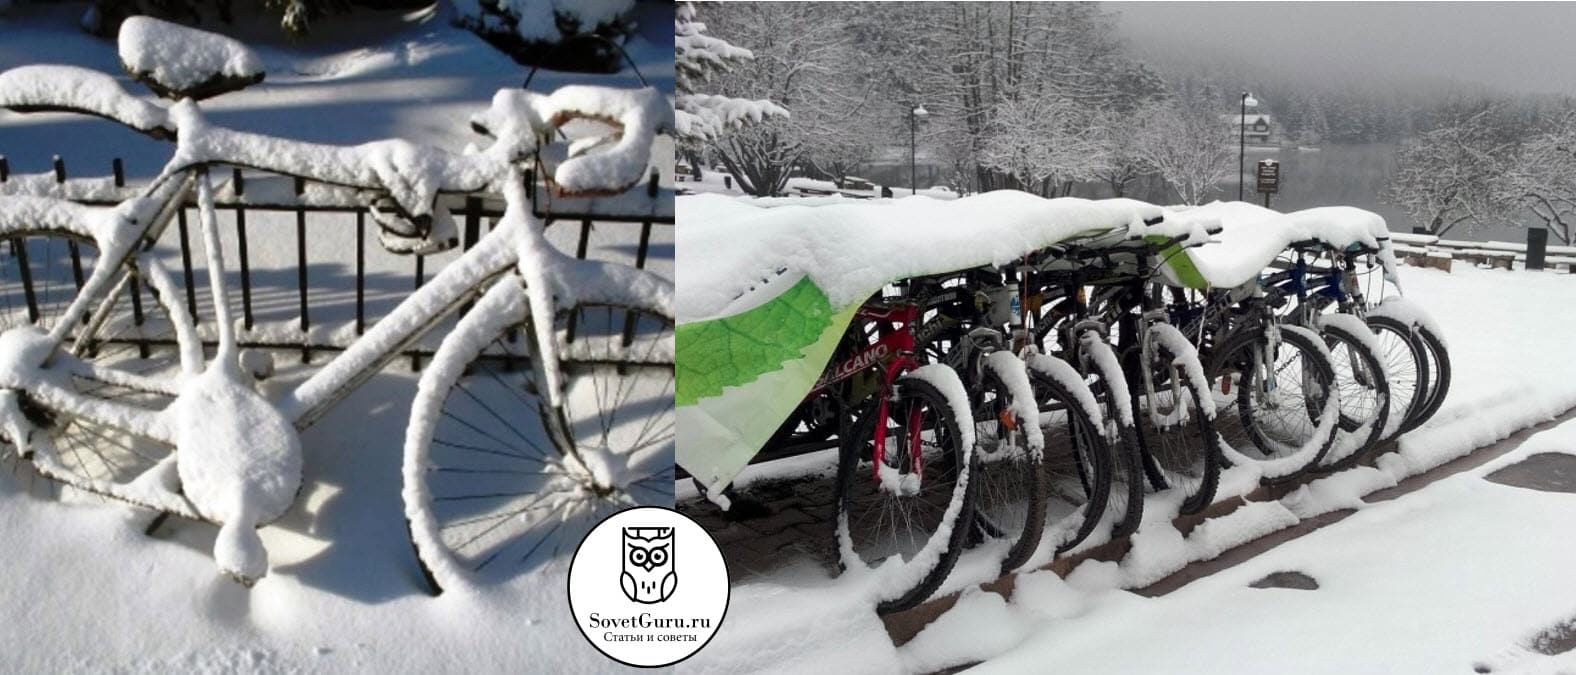 Можно ли хранить велосипед зимой на улице 